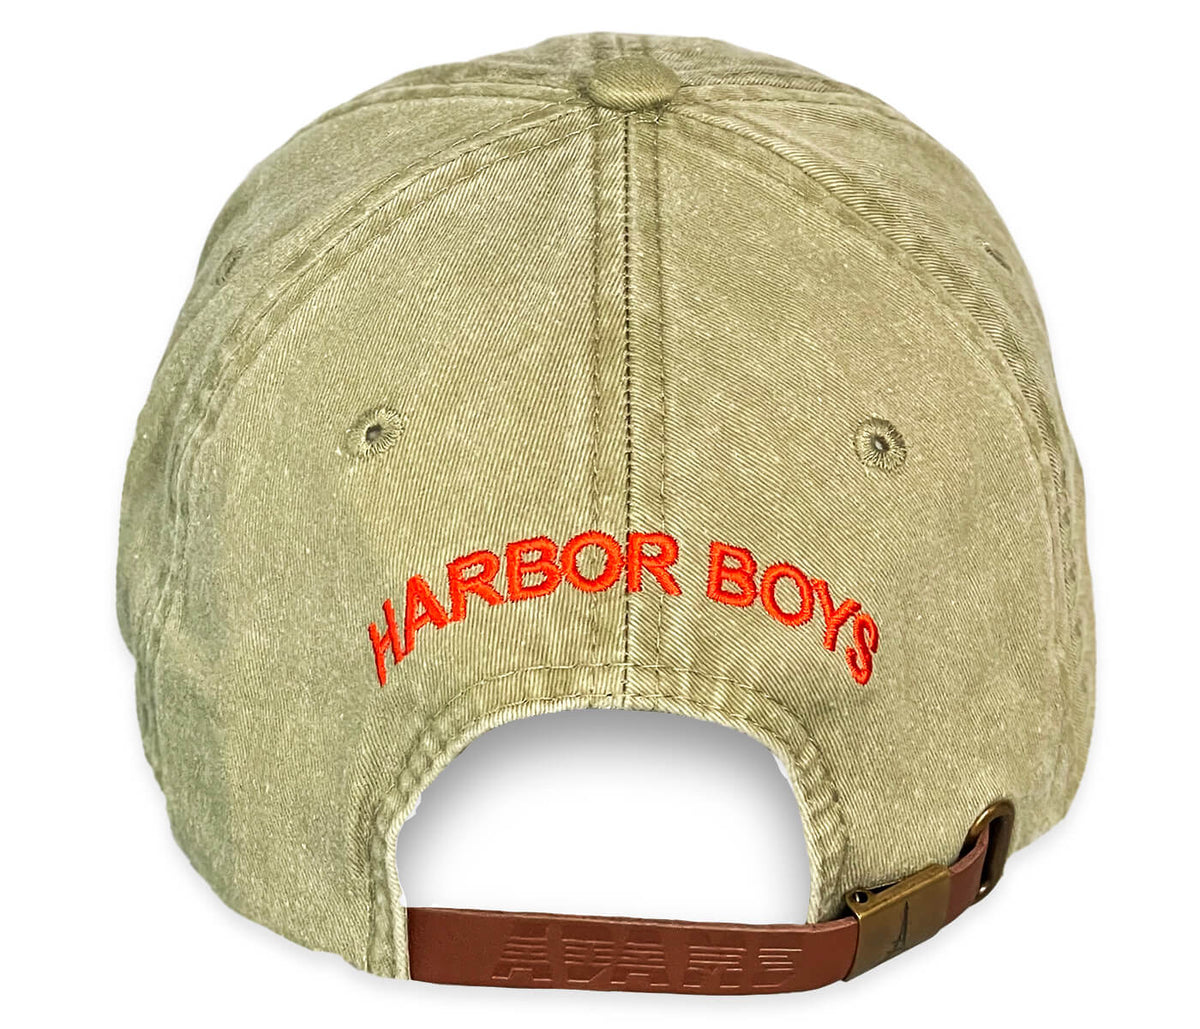 Adams Brand Canada Hat – Harbor Boys Apparel